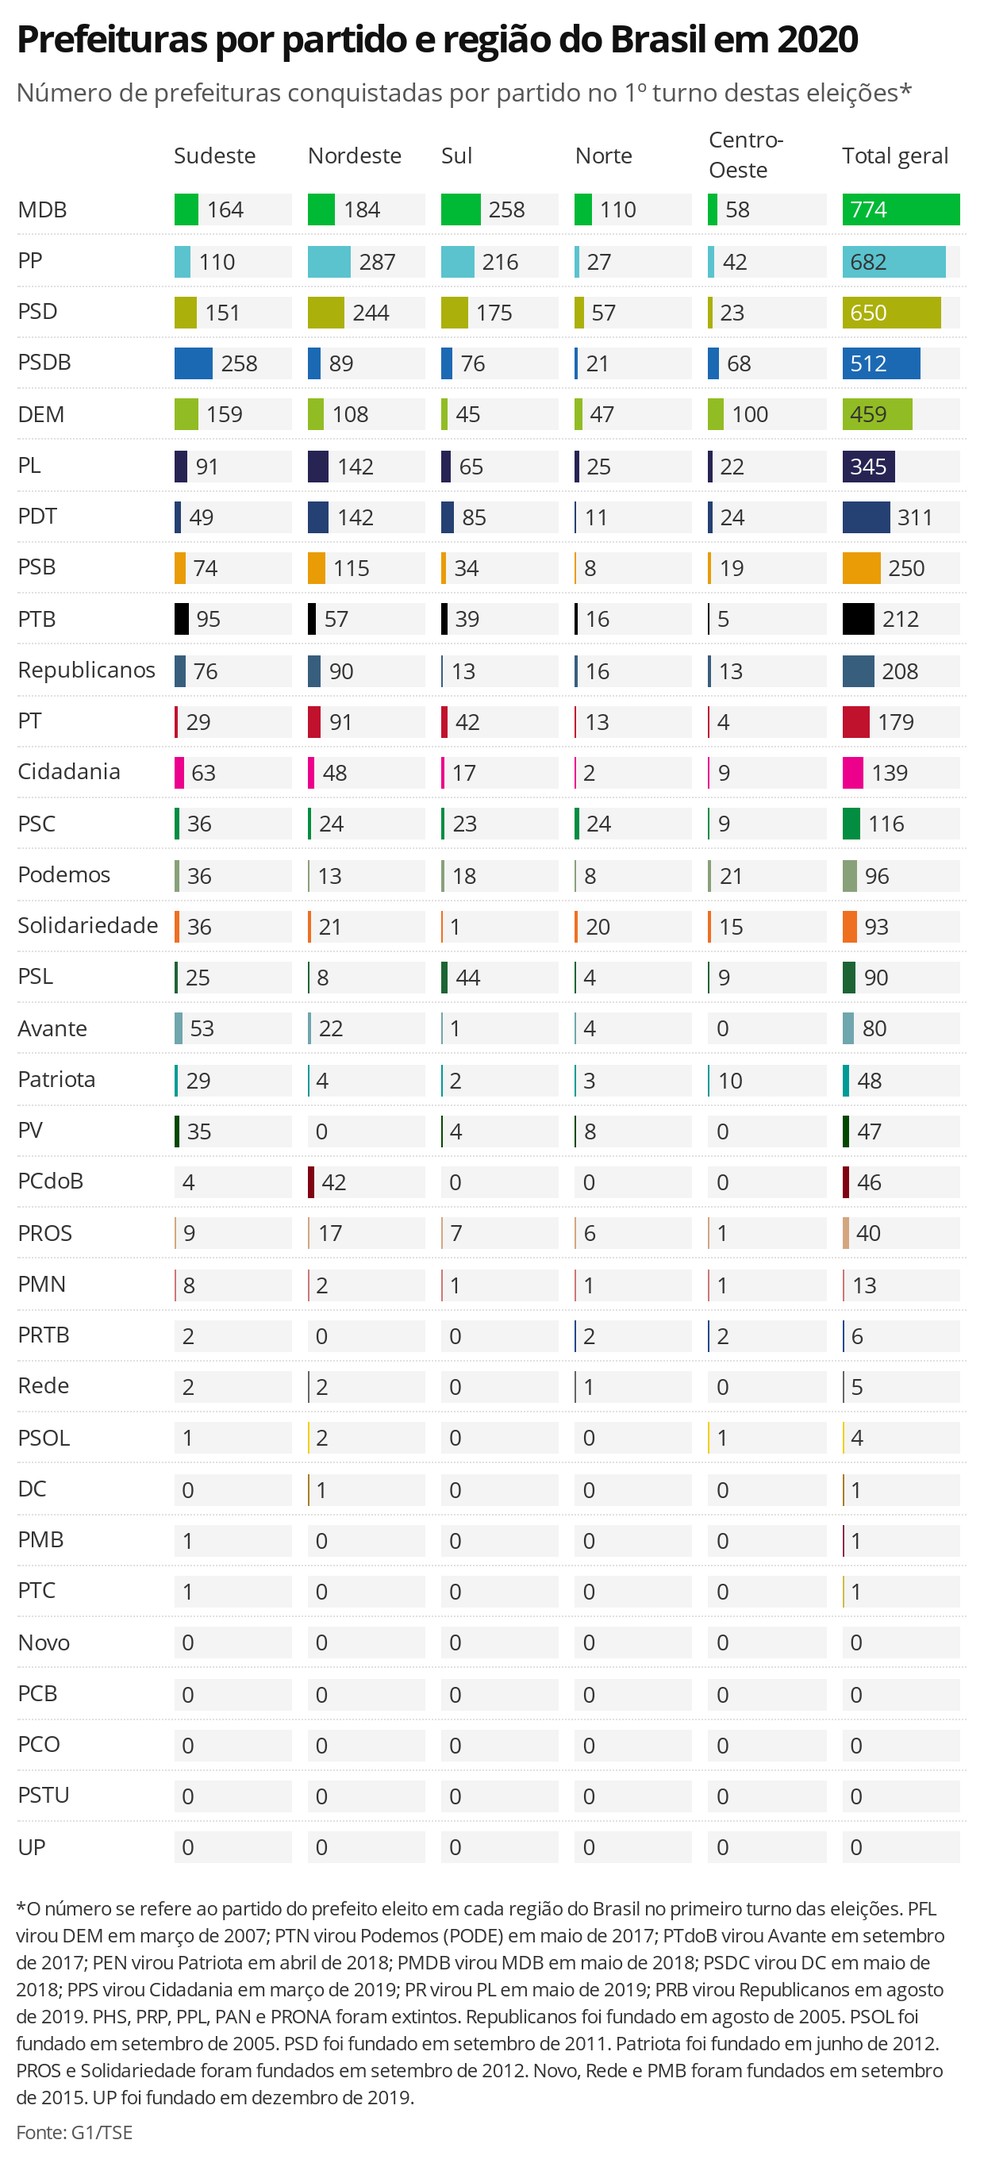 Prefeituras por partido em cada região do Brasil em 2020 - número de prefeituras conquistadas por partido no primeiro turno das eleições — Foto: Datawrapper / Gabriela Caesar